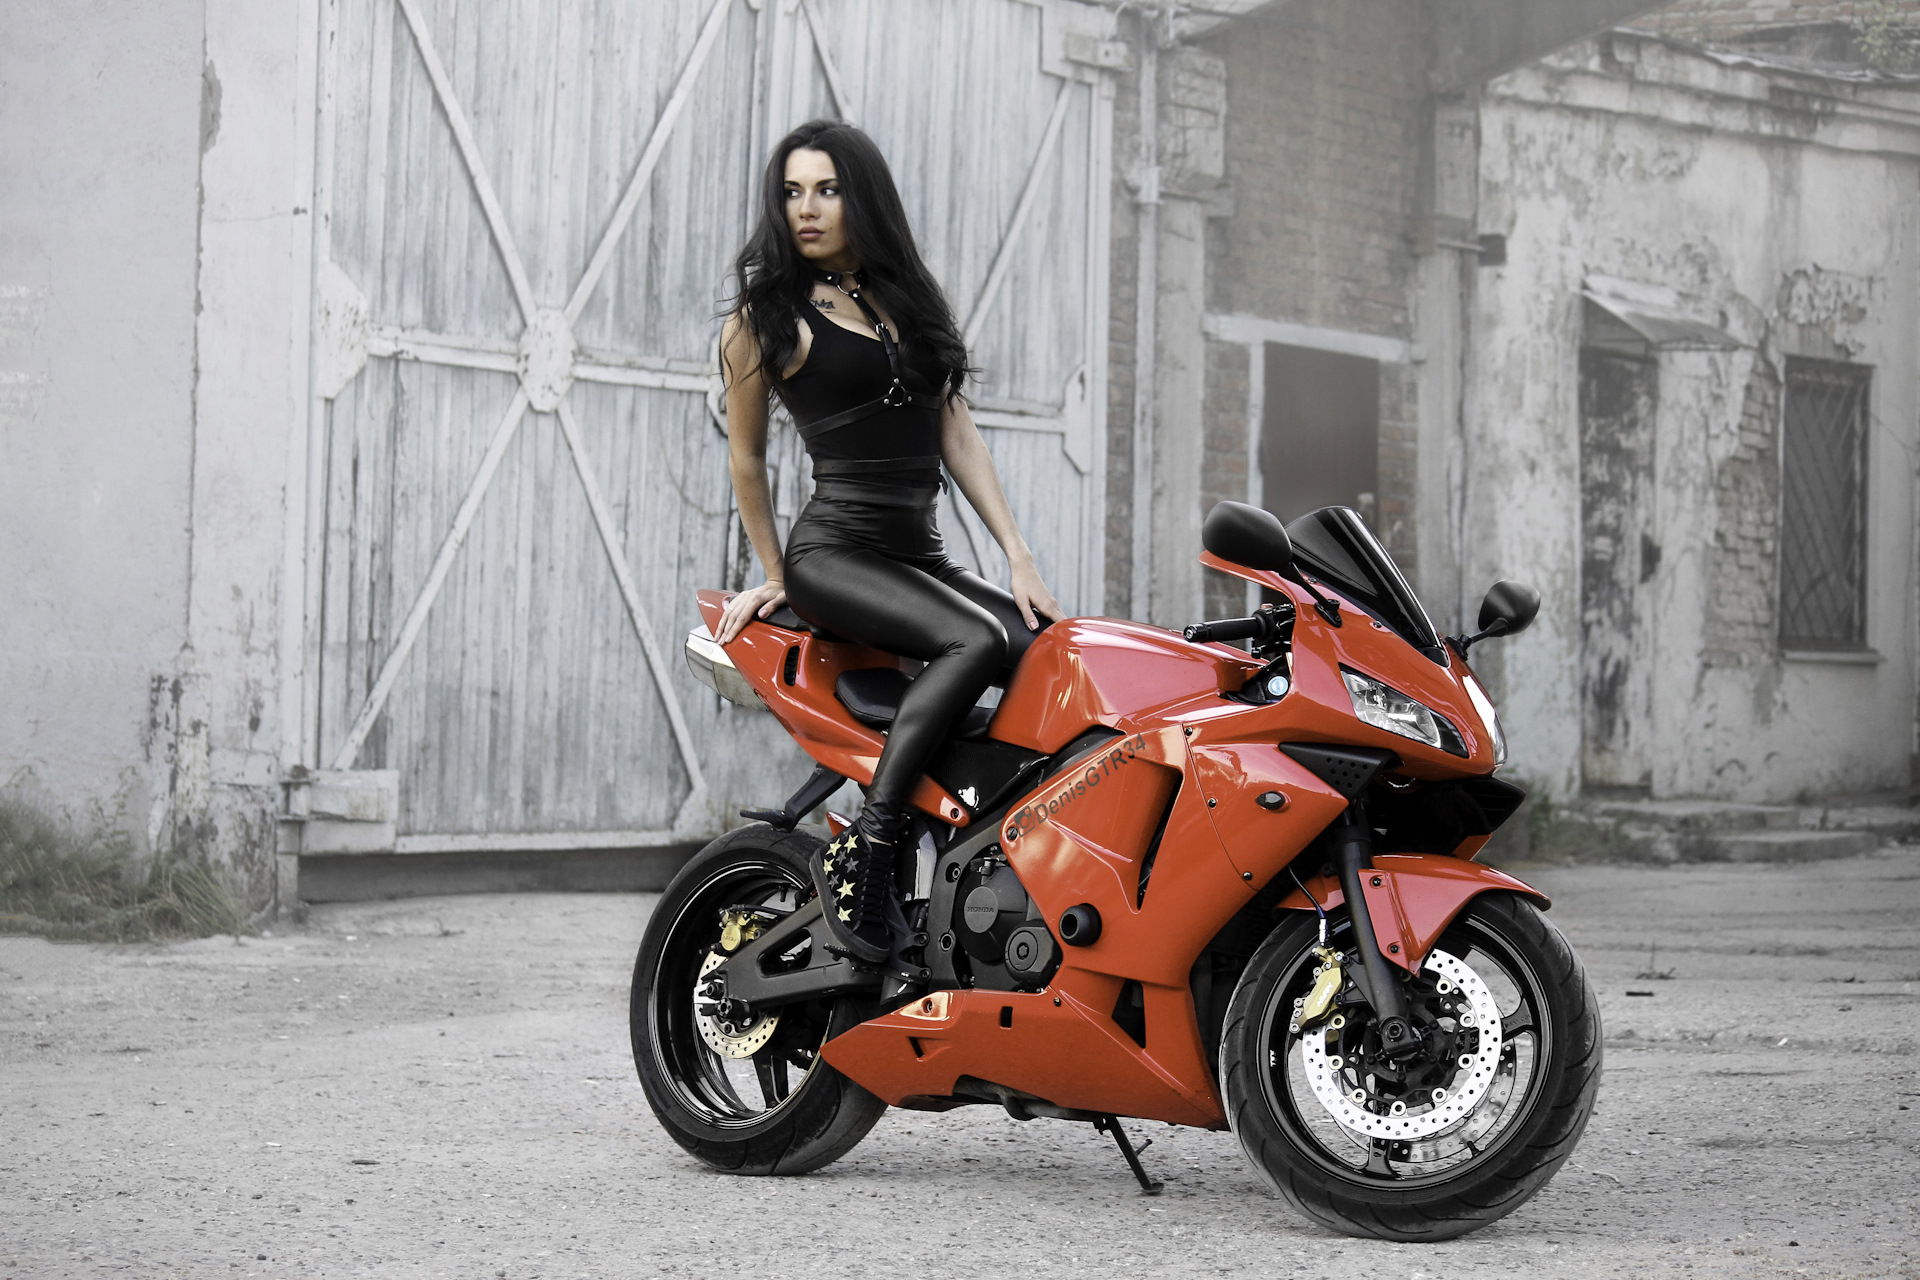 Про девушку на мотоцикле. Девушка на мотоцикле. Красивые девушки на мотоциклах. Фотосессия на мотоцикле девушки. Девушка на мотоцикле Хонда.